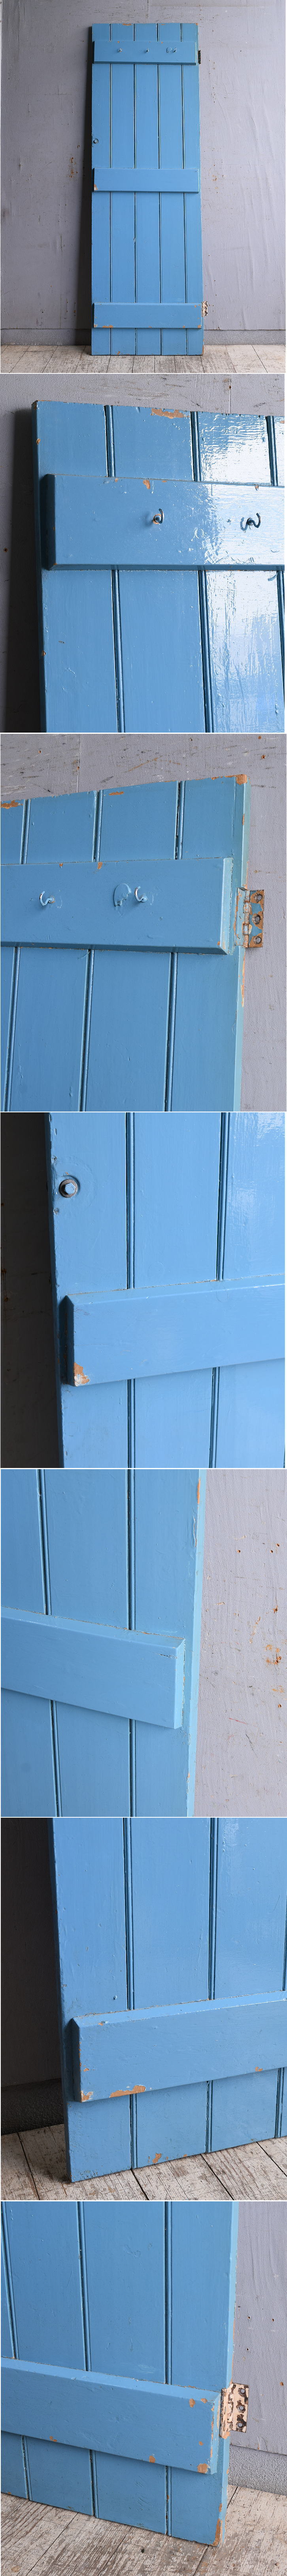 イギリス アンティーク ドア 扉 ディスプレイ 建具 10481